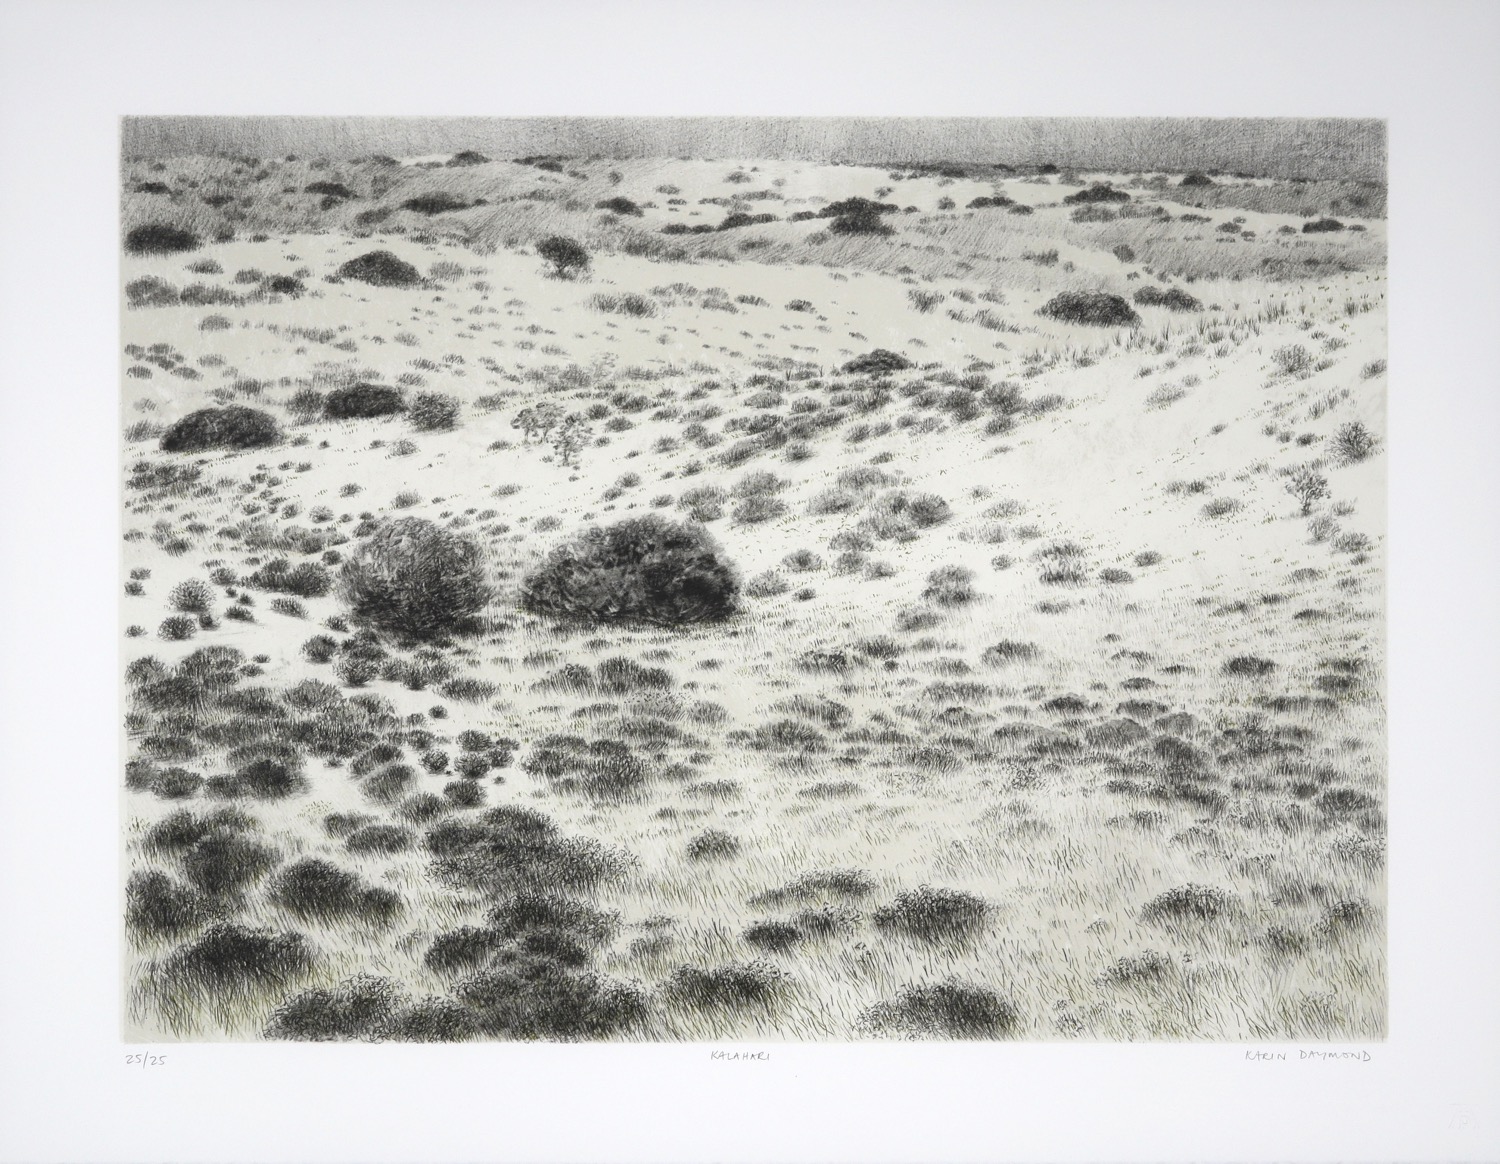 Litho of soft grass-covered dune landscape in the Kalahari Desert